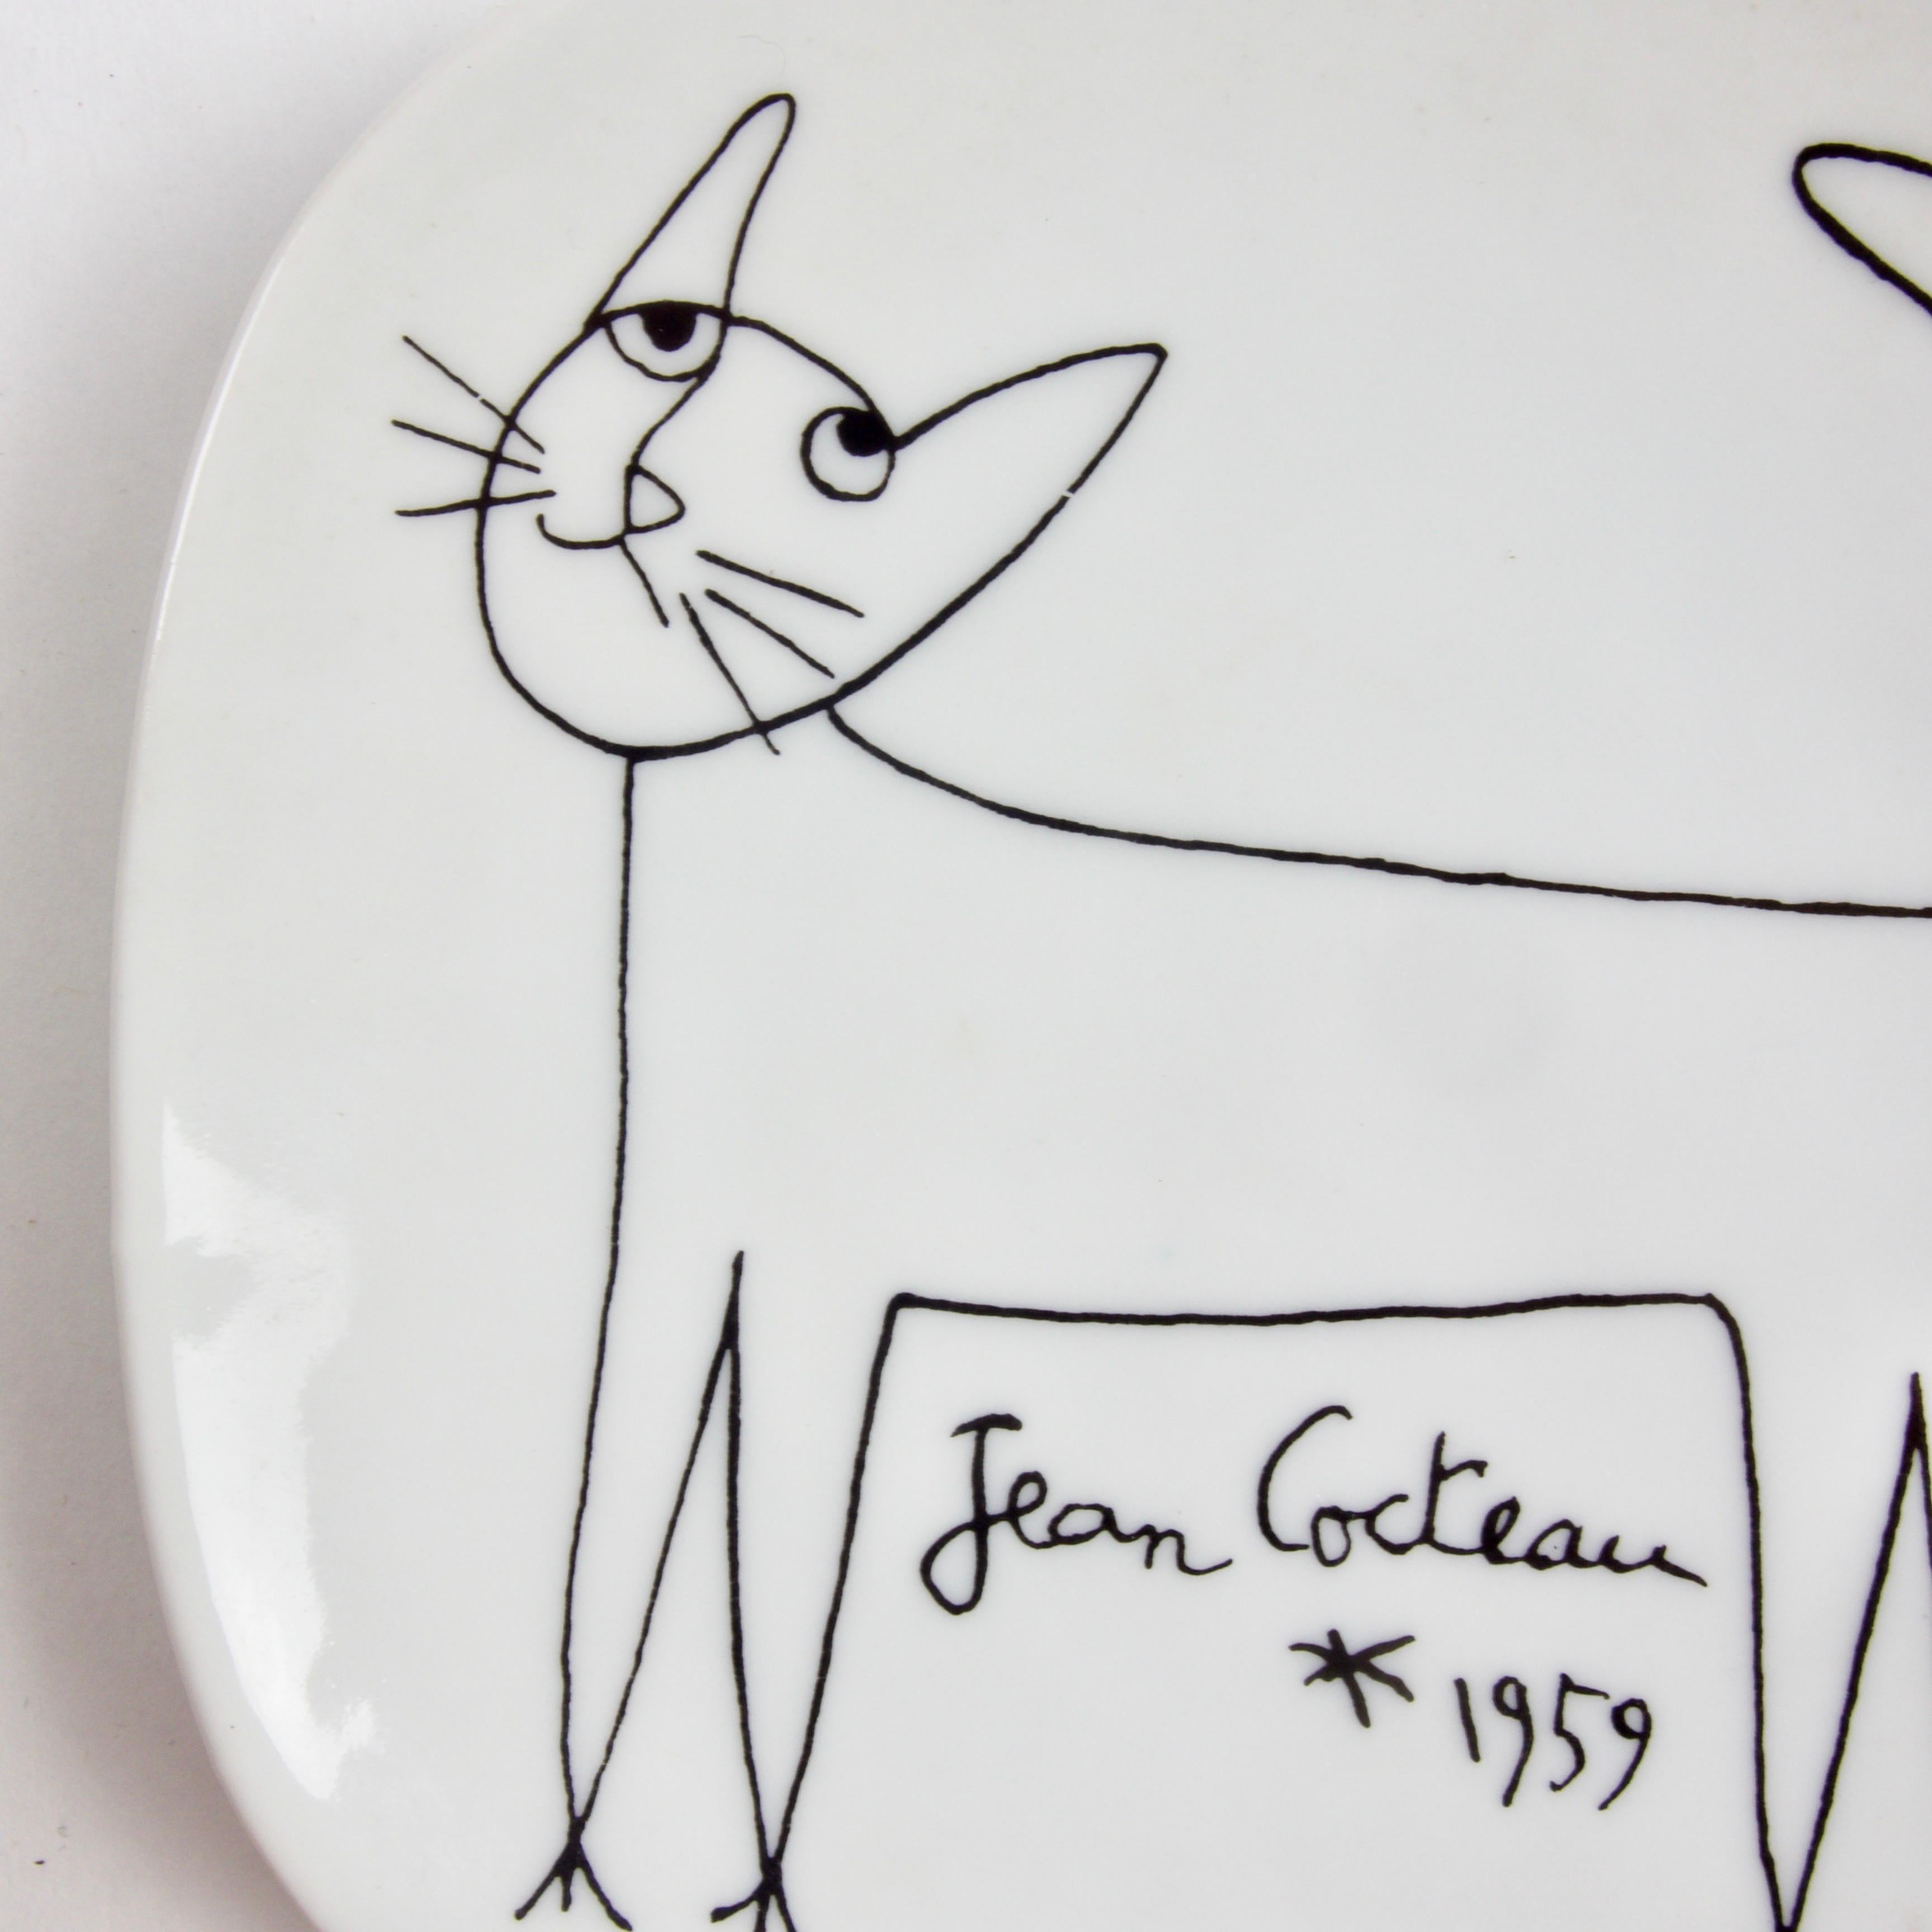 Ceramic Jean Cocteau Porcelain Dish for Limoges, 1959